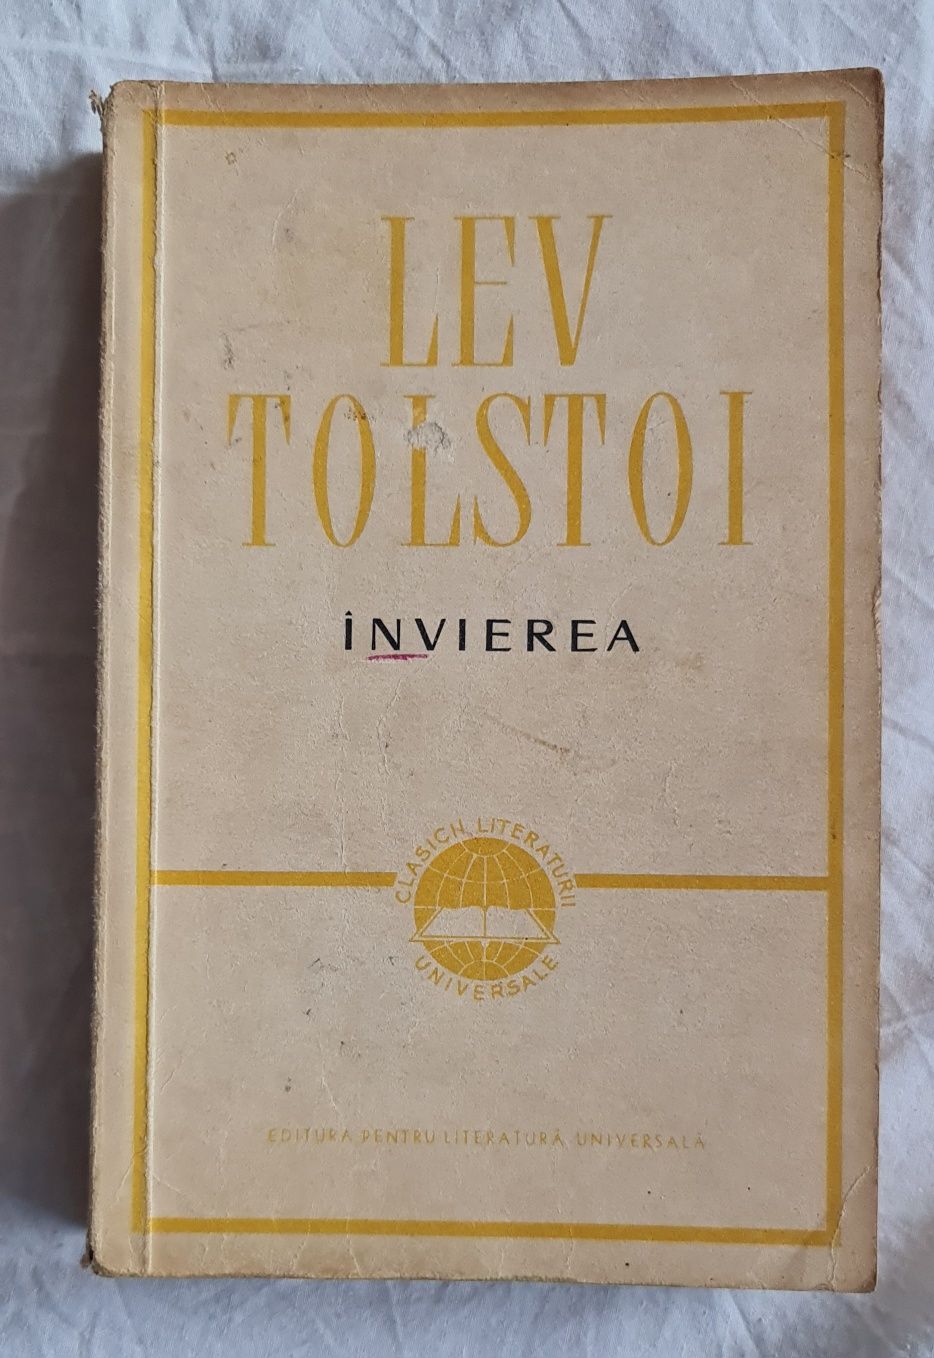 INVIEREA de Lev Tolstoi